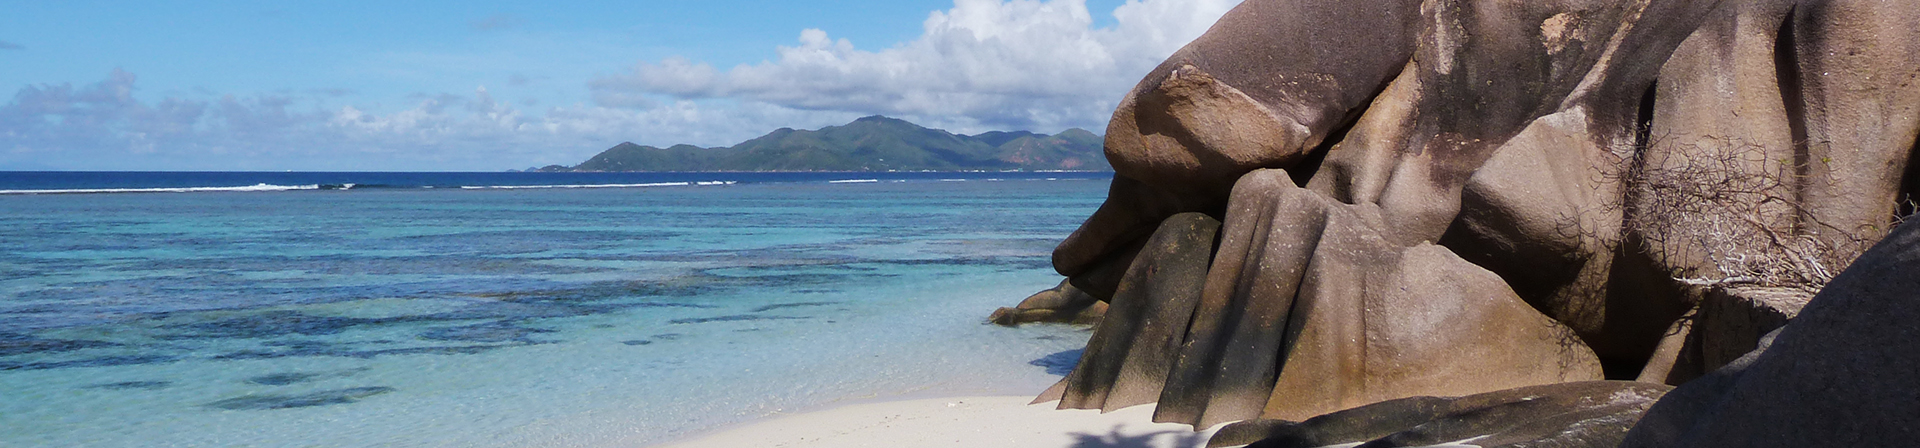 Lavigne Reisen: Seychellen im Indischen Ozean